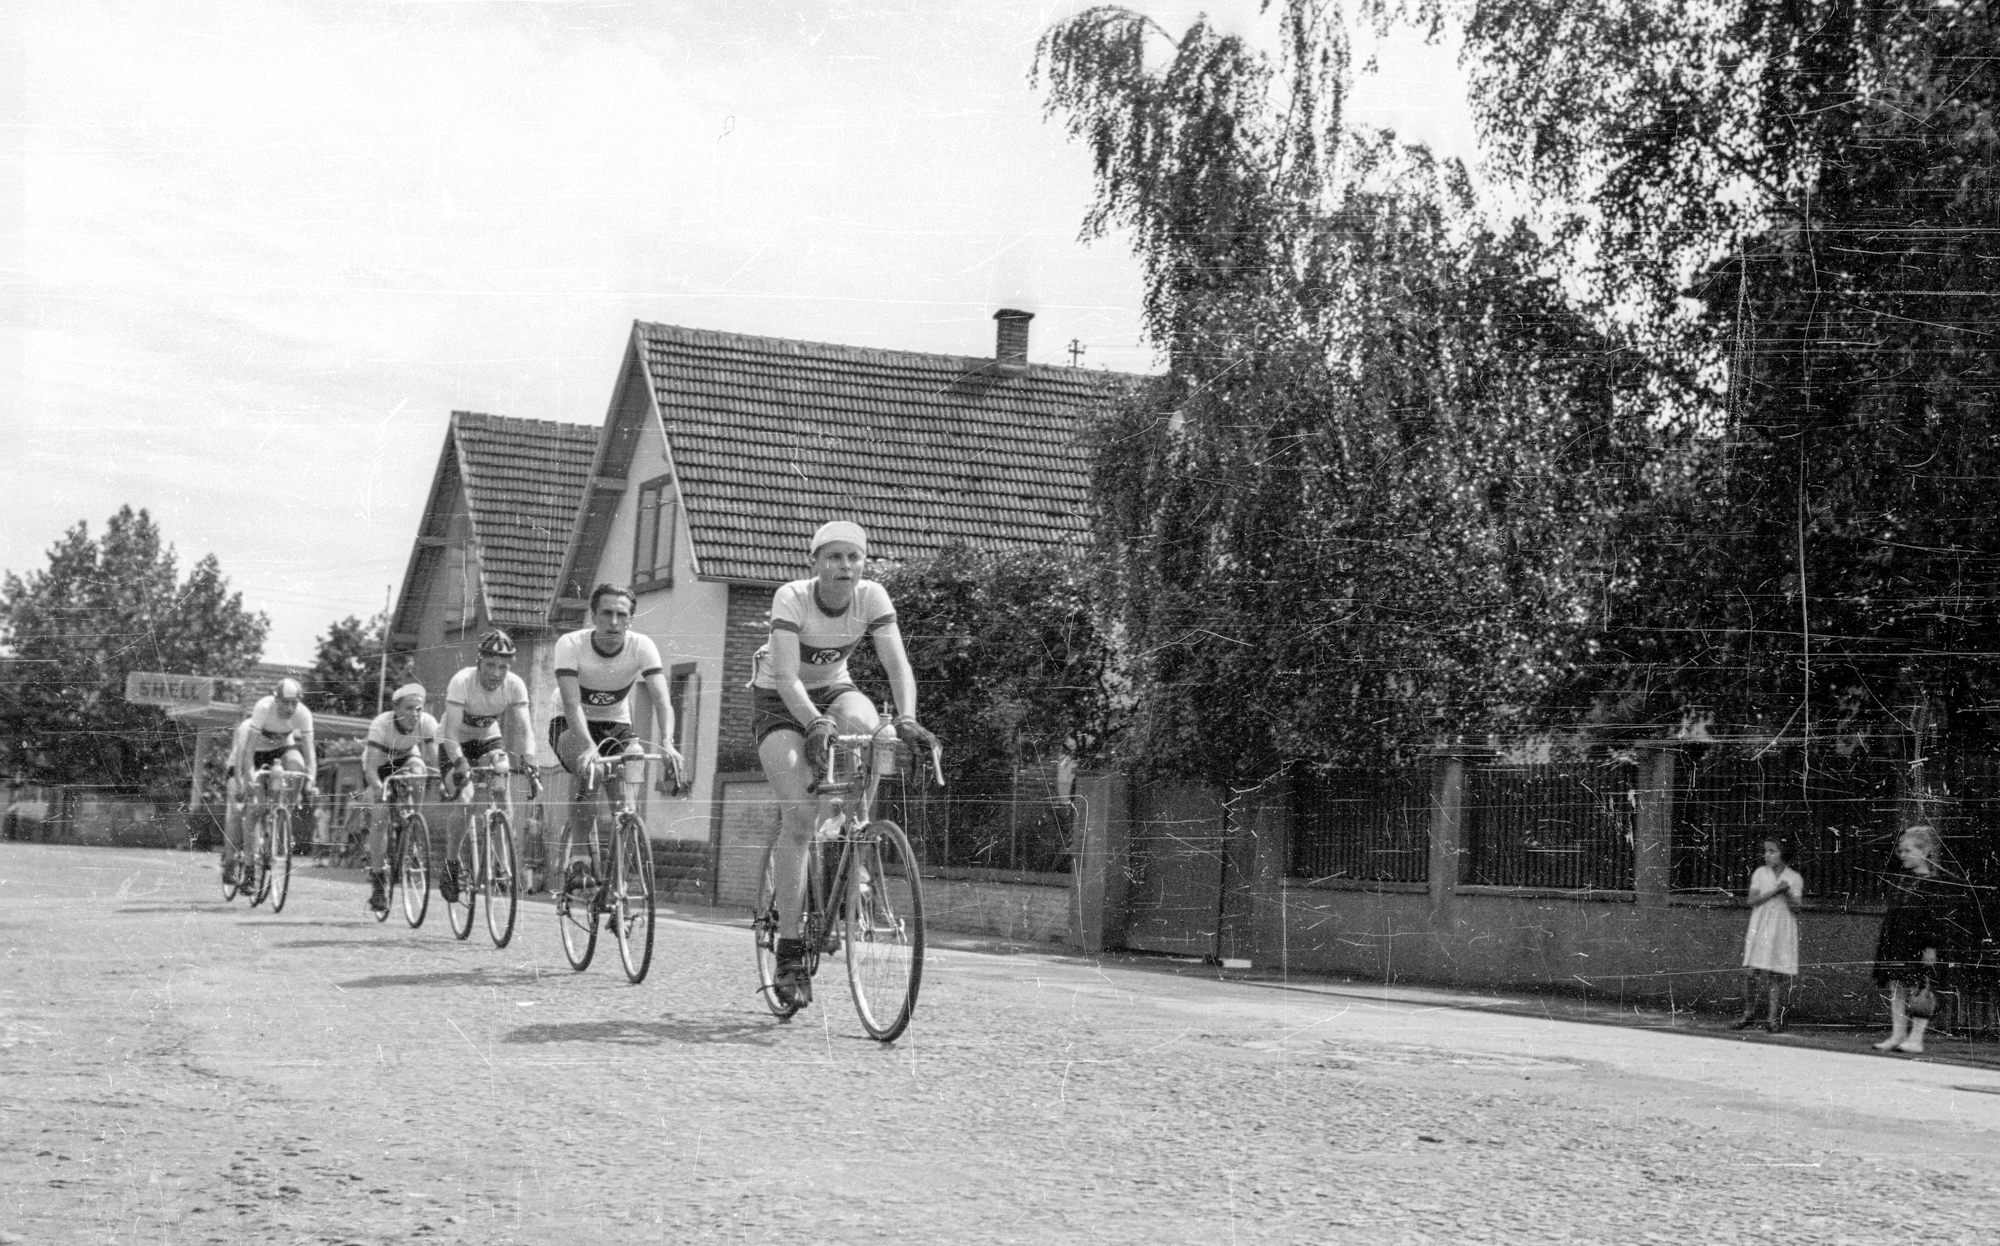 1951: Radrennen in Schifferstadt